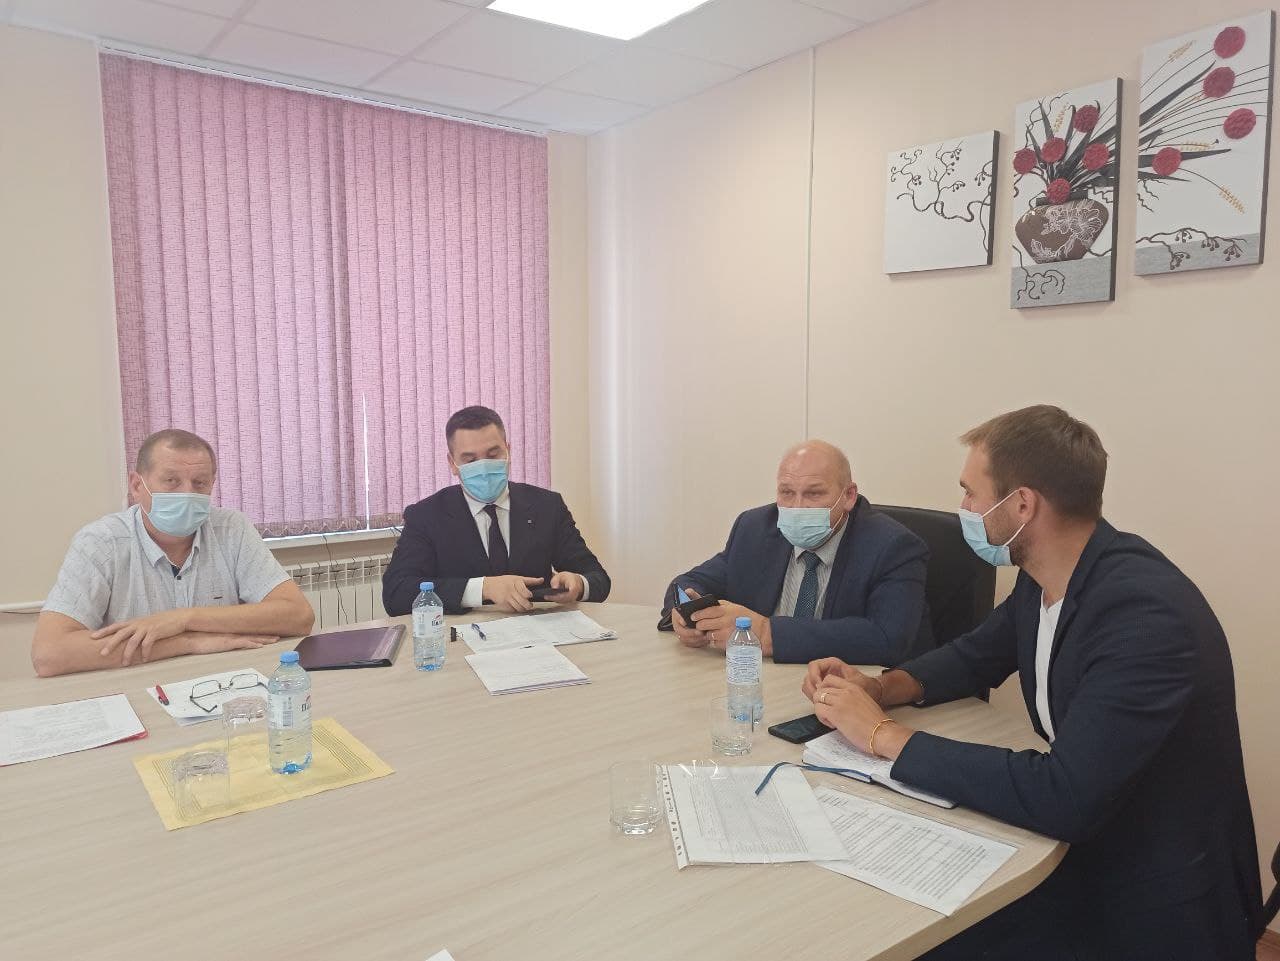 20 октября главврач ЦГБ Андрей Наумкин доложит на Думе о состоянии здравоохранения в округе